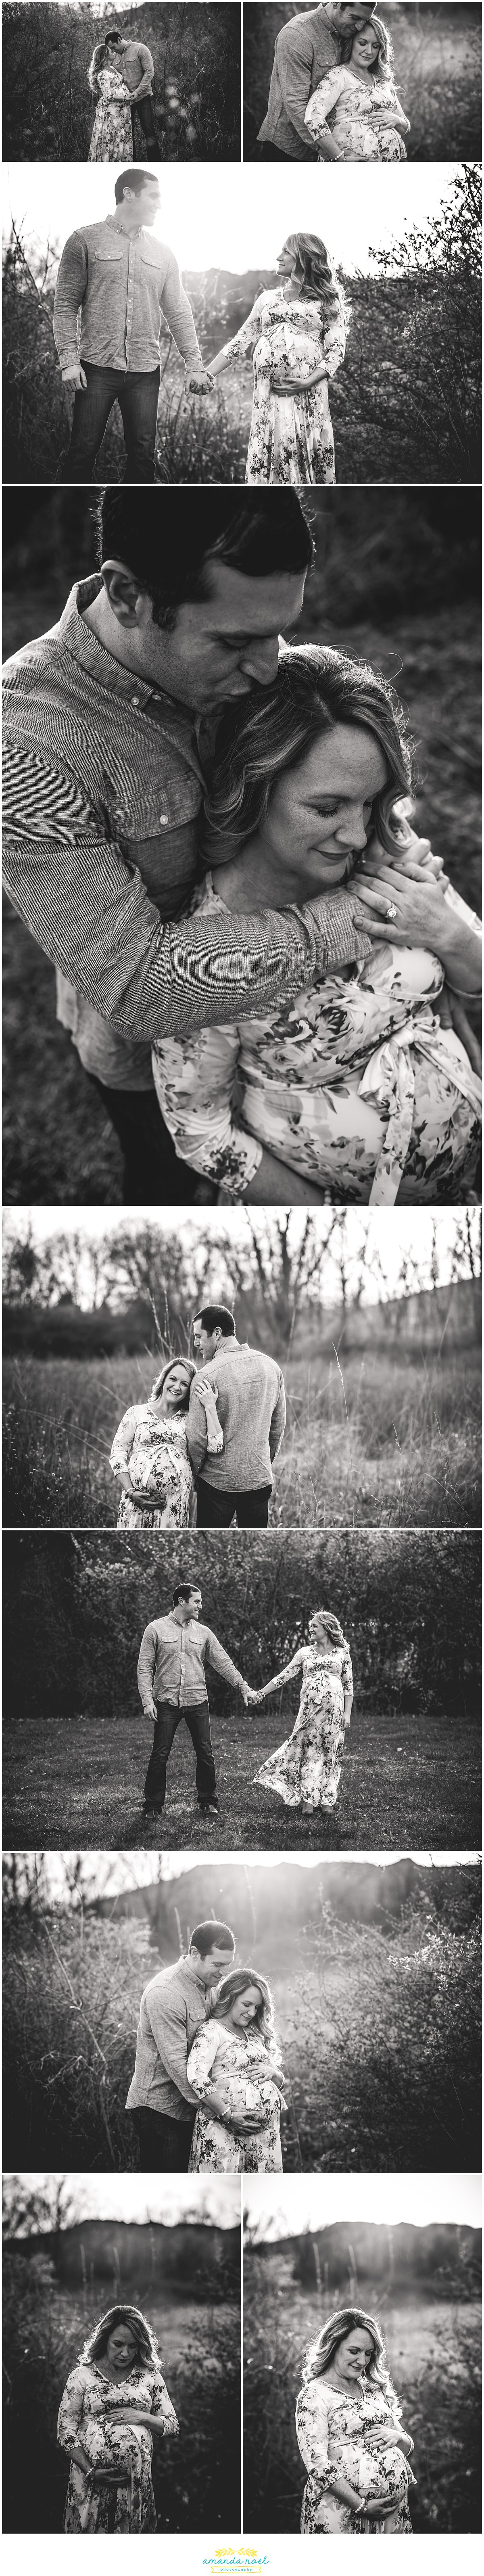 Dayton Ohio maternity photographer | Amanda Noel Photography | Spring sunset maternity session